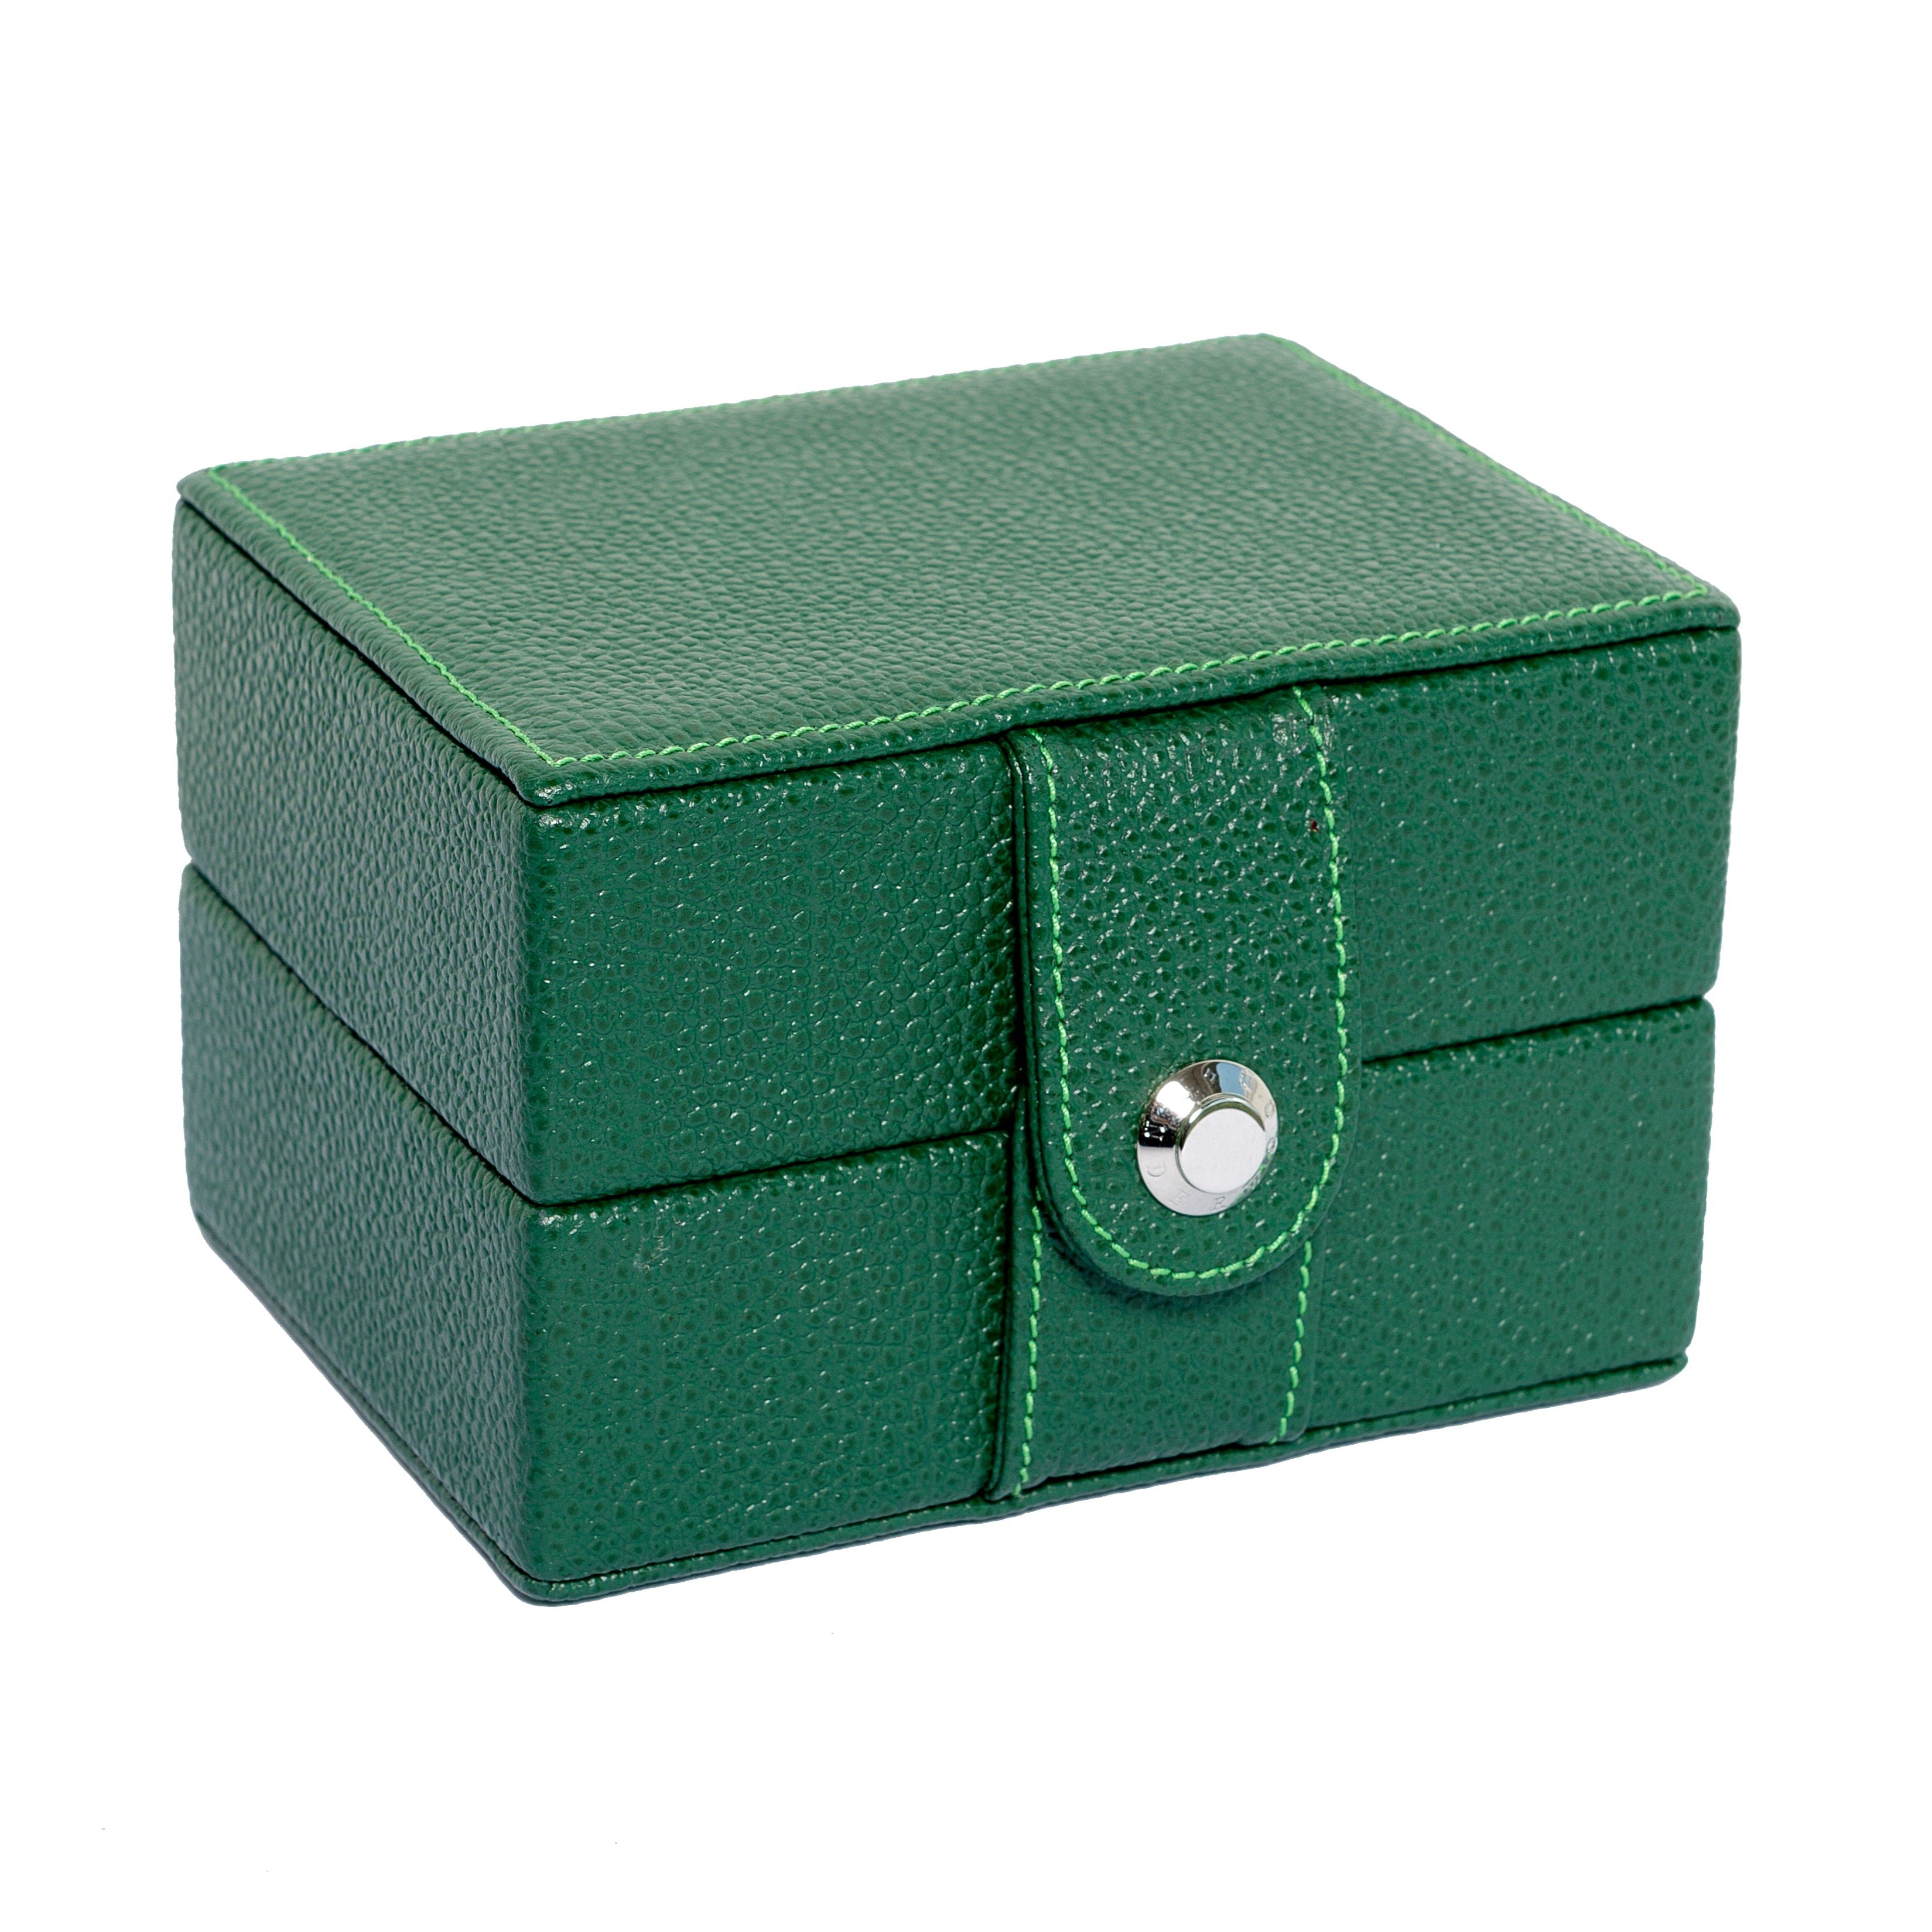 Underwood (London) - Single Watch Storage Case in Green Leather